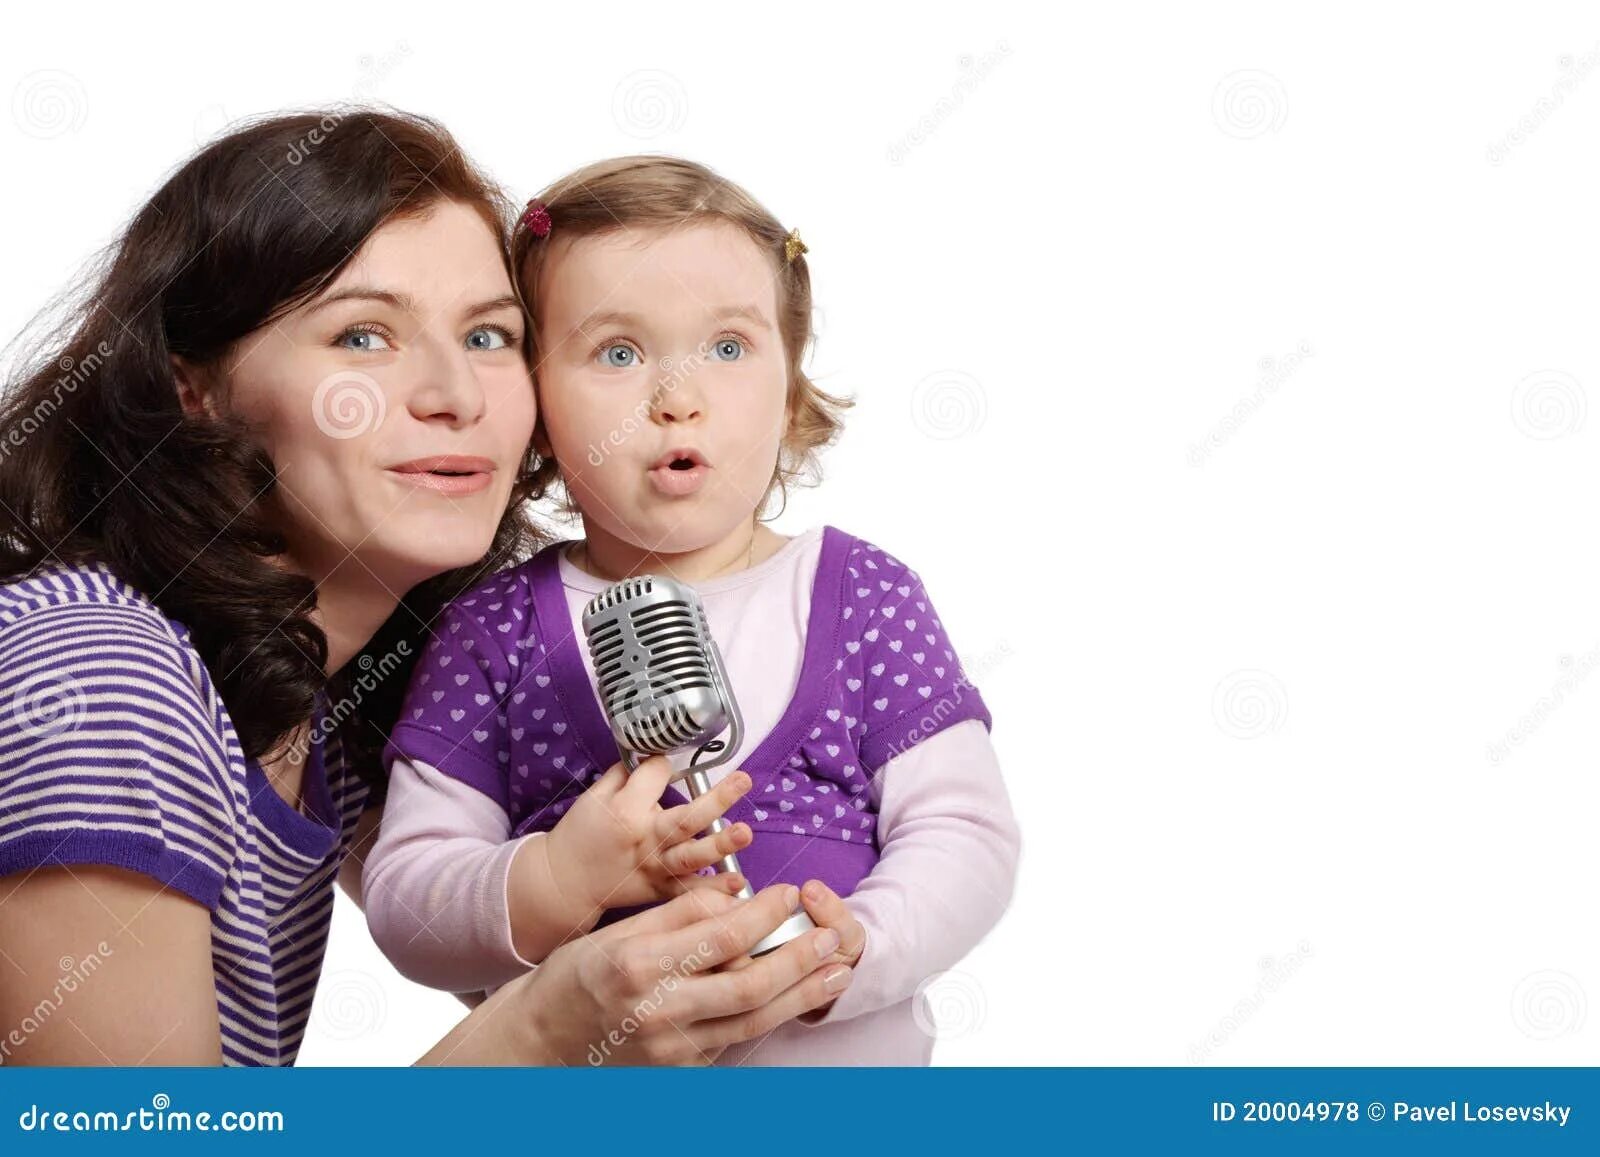 Дочь поет маме песню. Мама поет ребенку. Мама с дочкой поют. Мама поет в микрофон. Ребенок с мамой поют вместе.